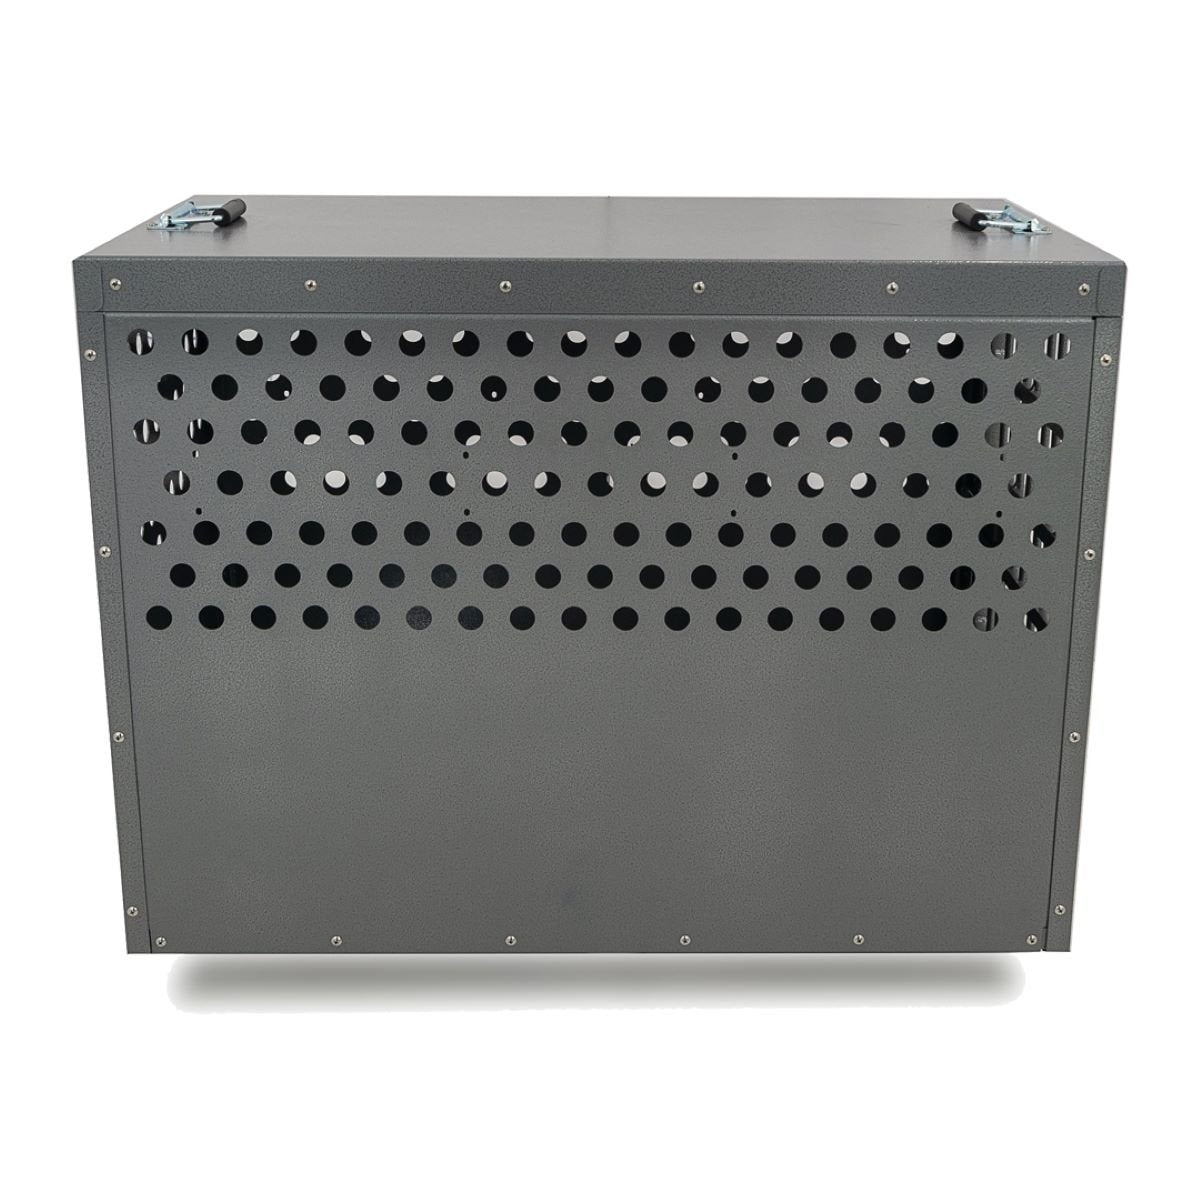 Zinger Winger Professional 3000 Front/Side Entry Dog Crate, PR3000-2-FS